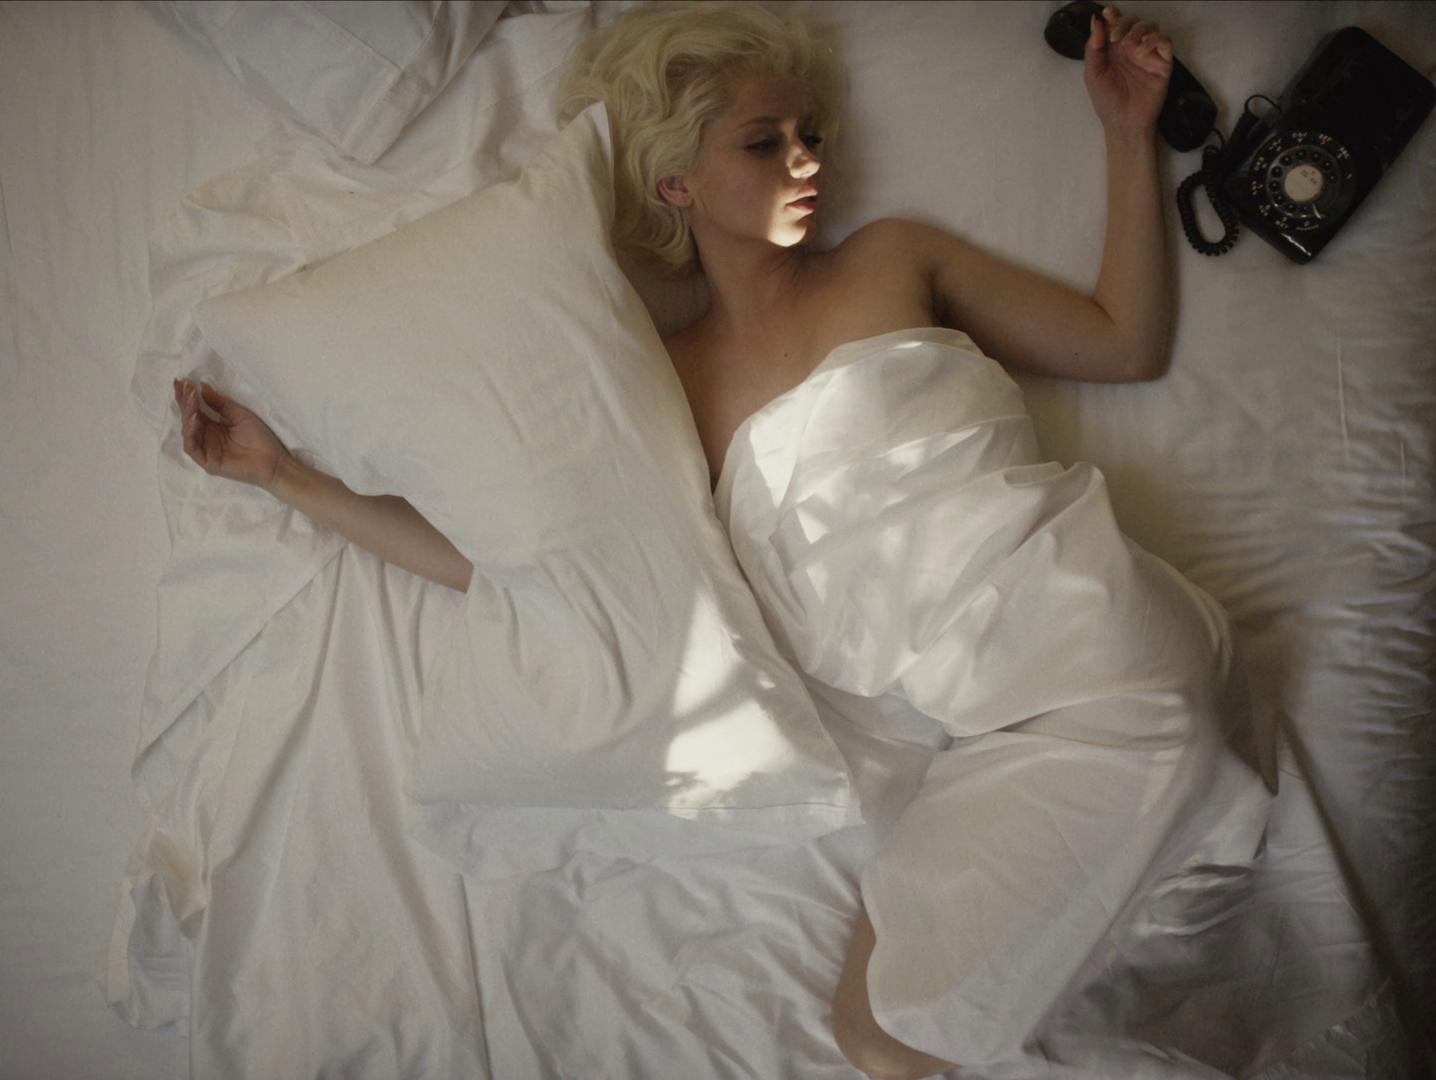 Cena do filme Blonde. Marilyn, já sem vida, deitada em sua cama, sem roupa, enrolada no lençol branco e com um travesseiro sobre seu braço direito. De seu lado esquerdo, um telefone desconectado, debaixo da sua mão